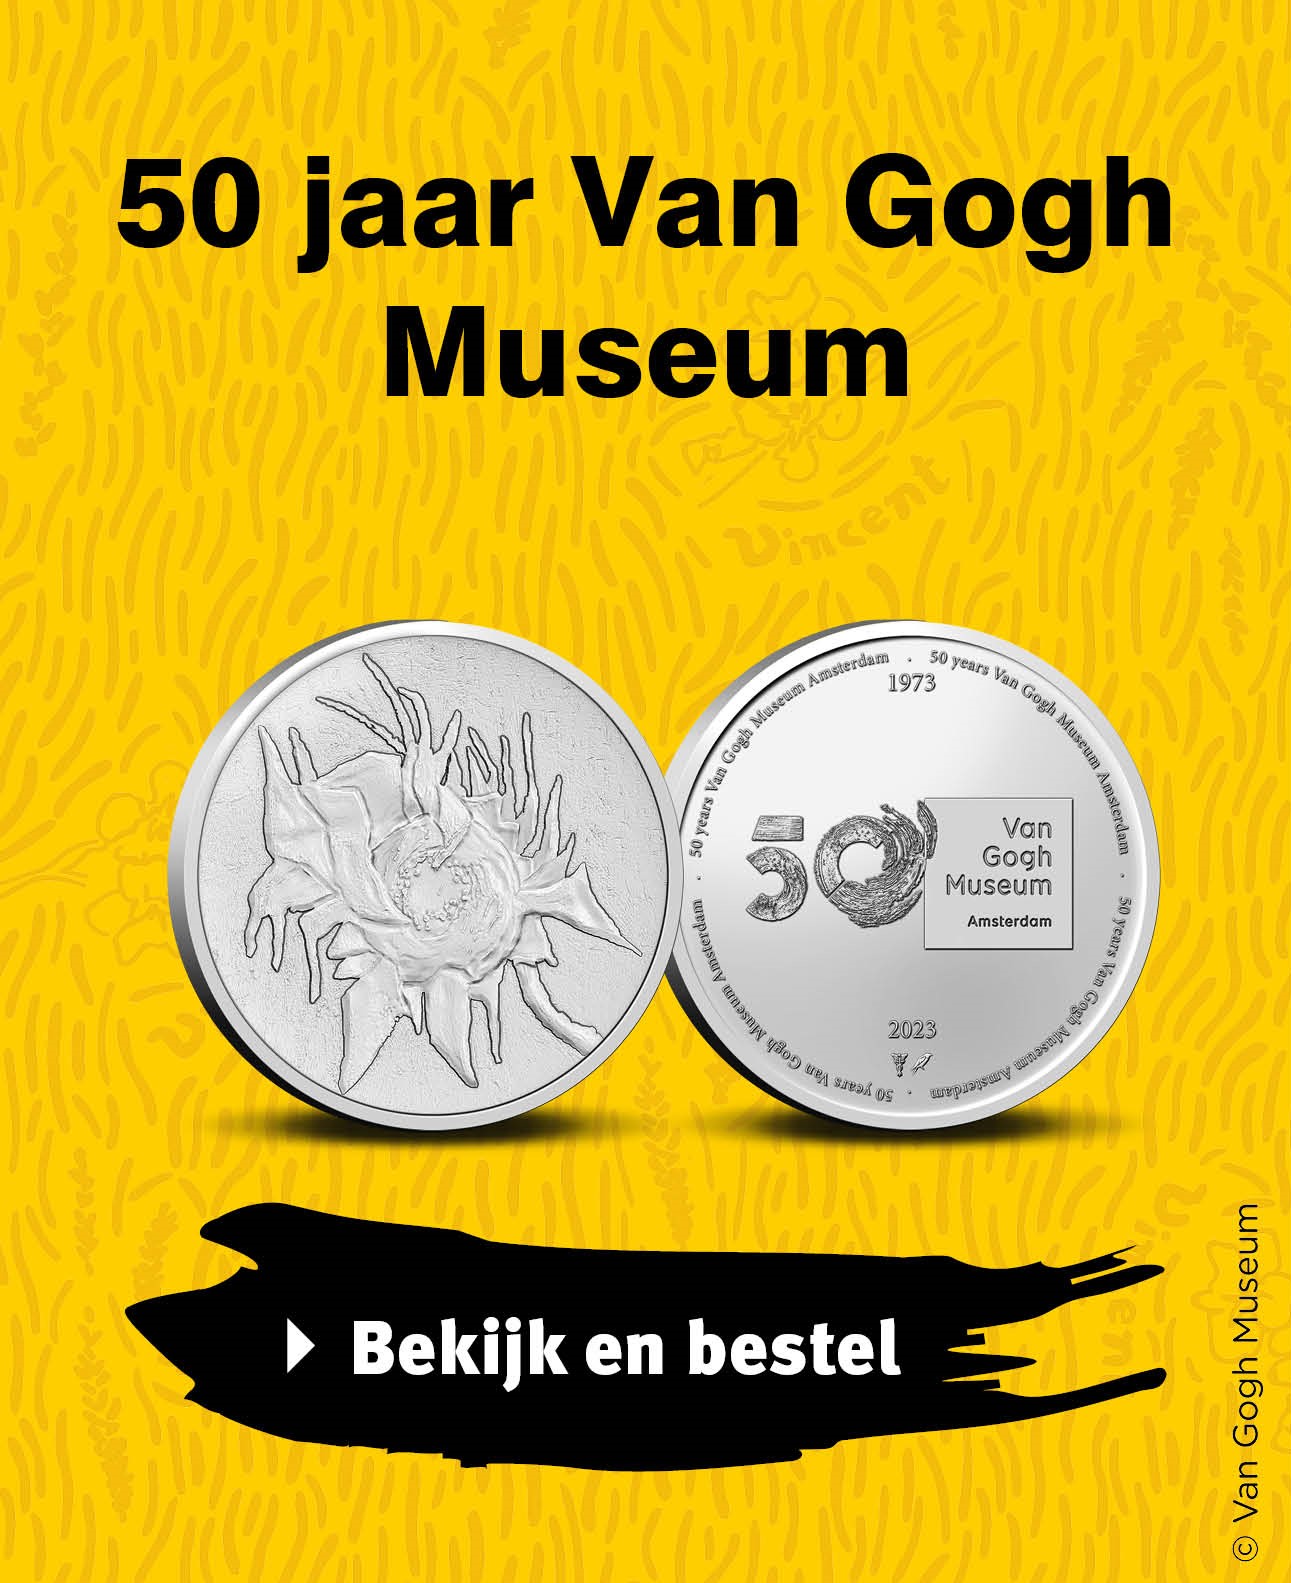 Bekijk en bestel: 50 jaar Van Gogh Museum in coincard